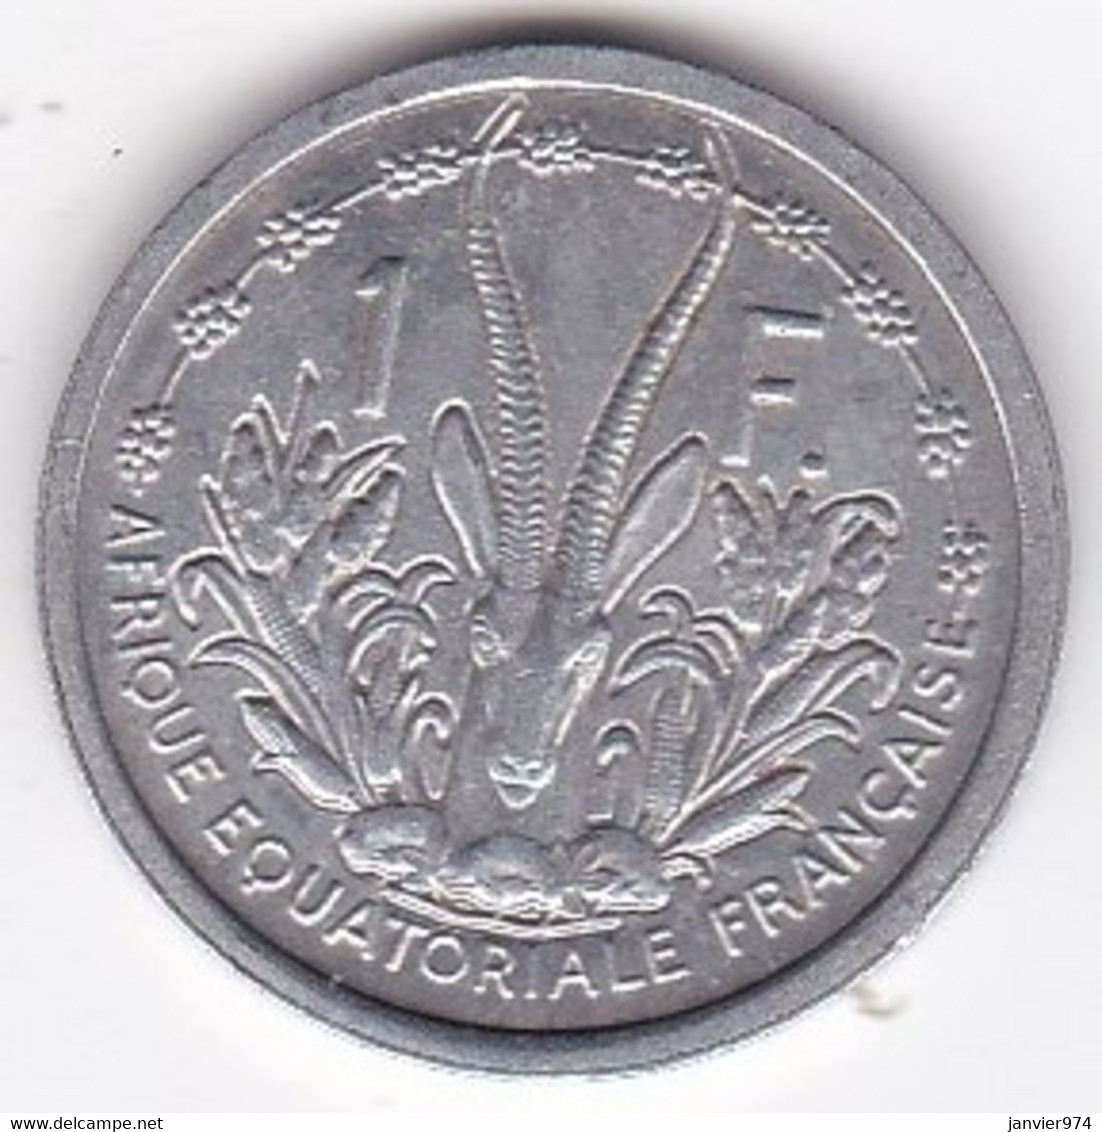 A. E. F. Union Française 1 Franc 1948 , En Aluminium, Lec# 15 - Afrique Equatoriale Française (Cameroun)